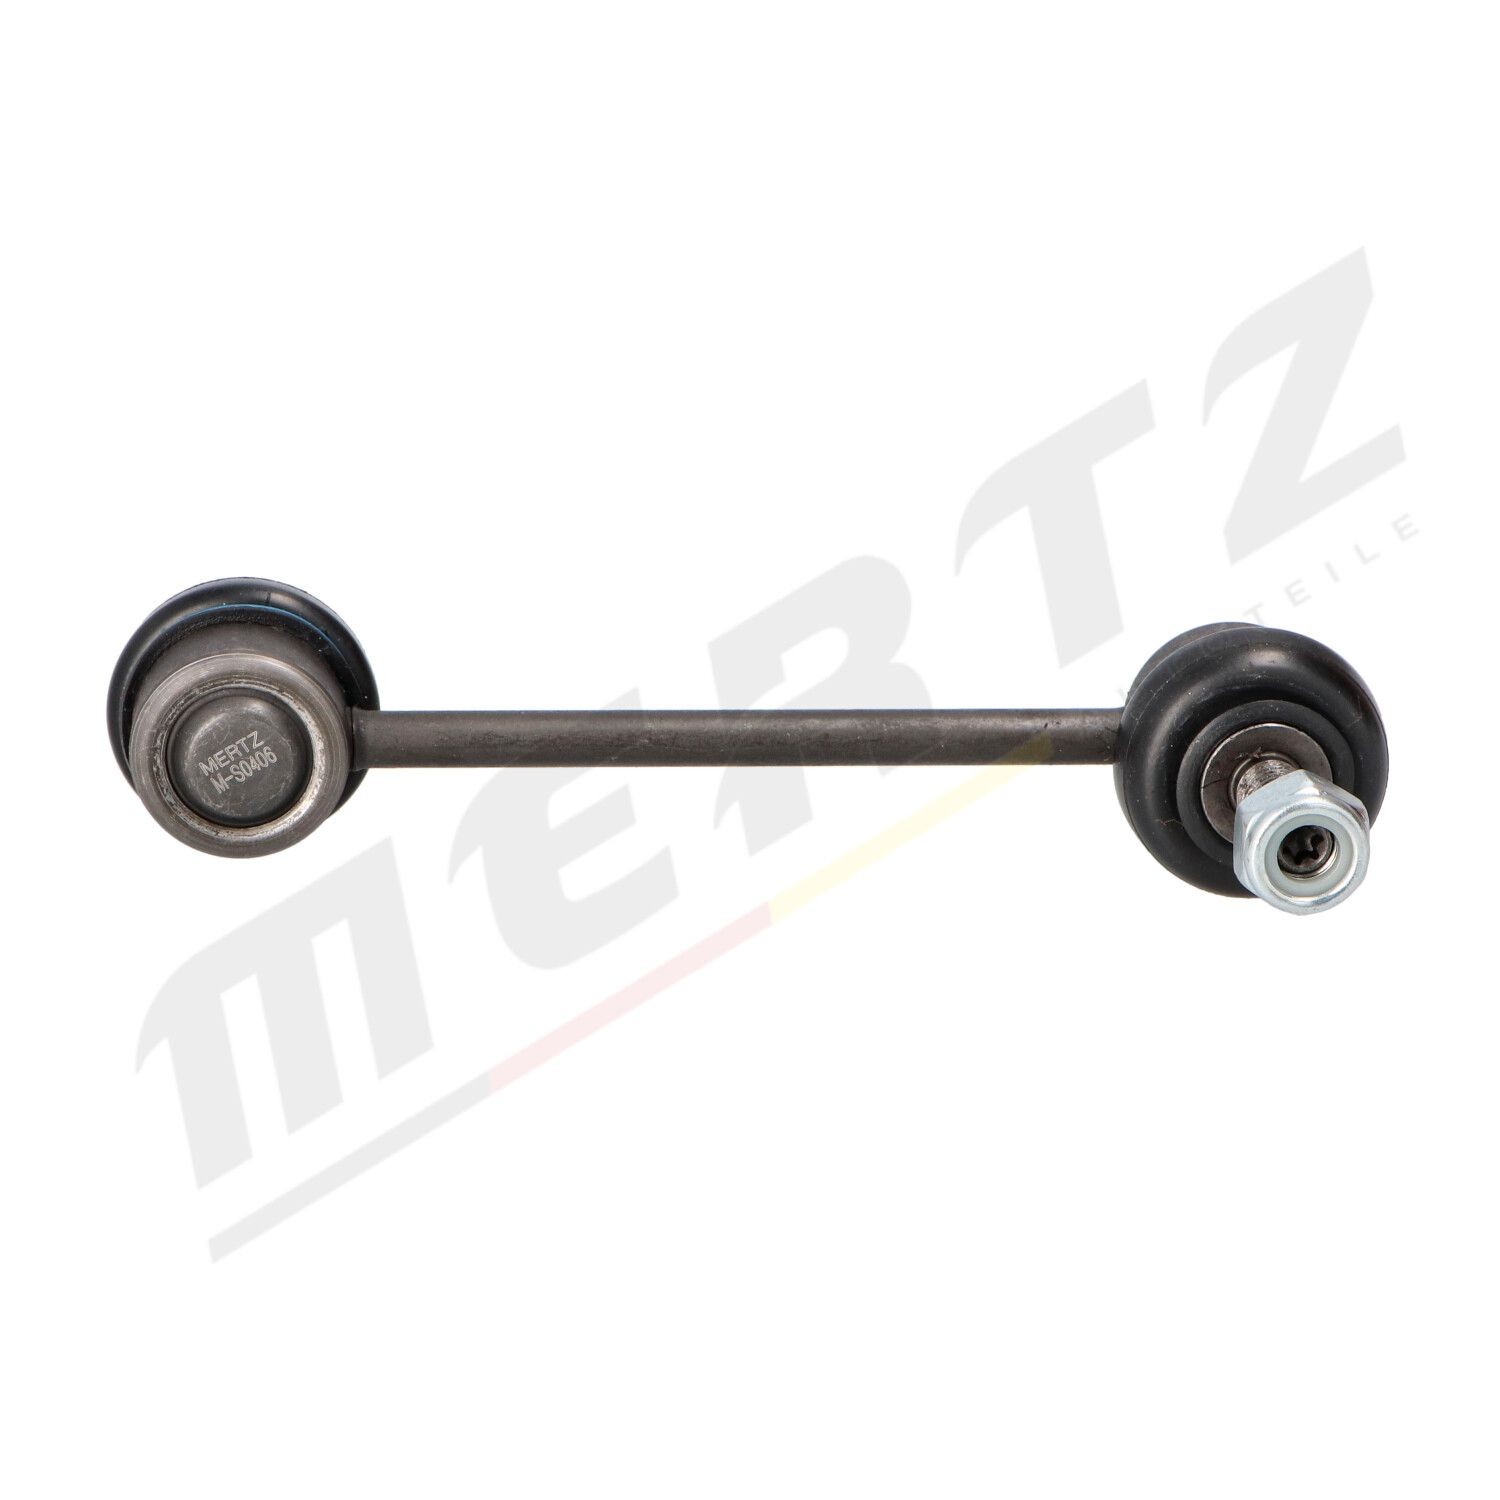 Drop link MERTZ Rear Axle Left, Rear Axle Right, 141mm, M10x1,5 , with nut, Steel - M-S0406